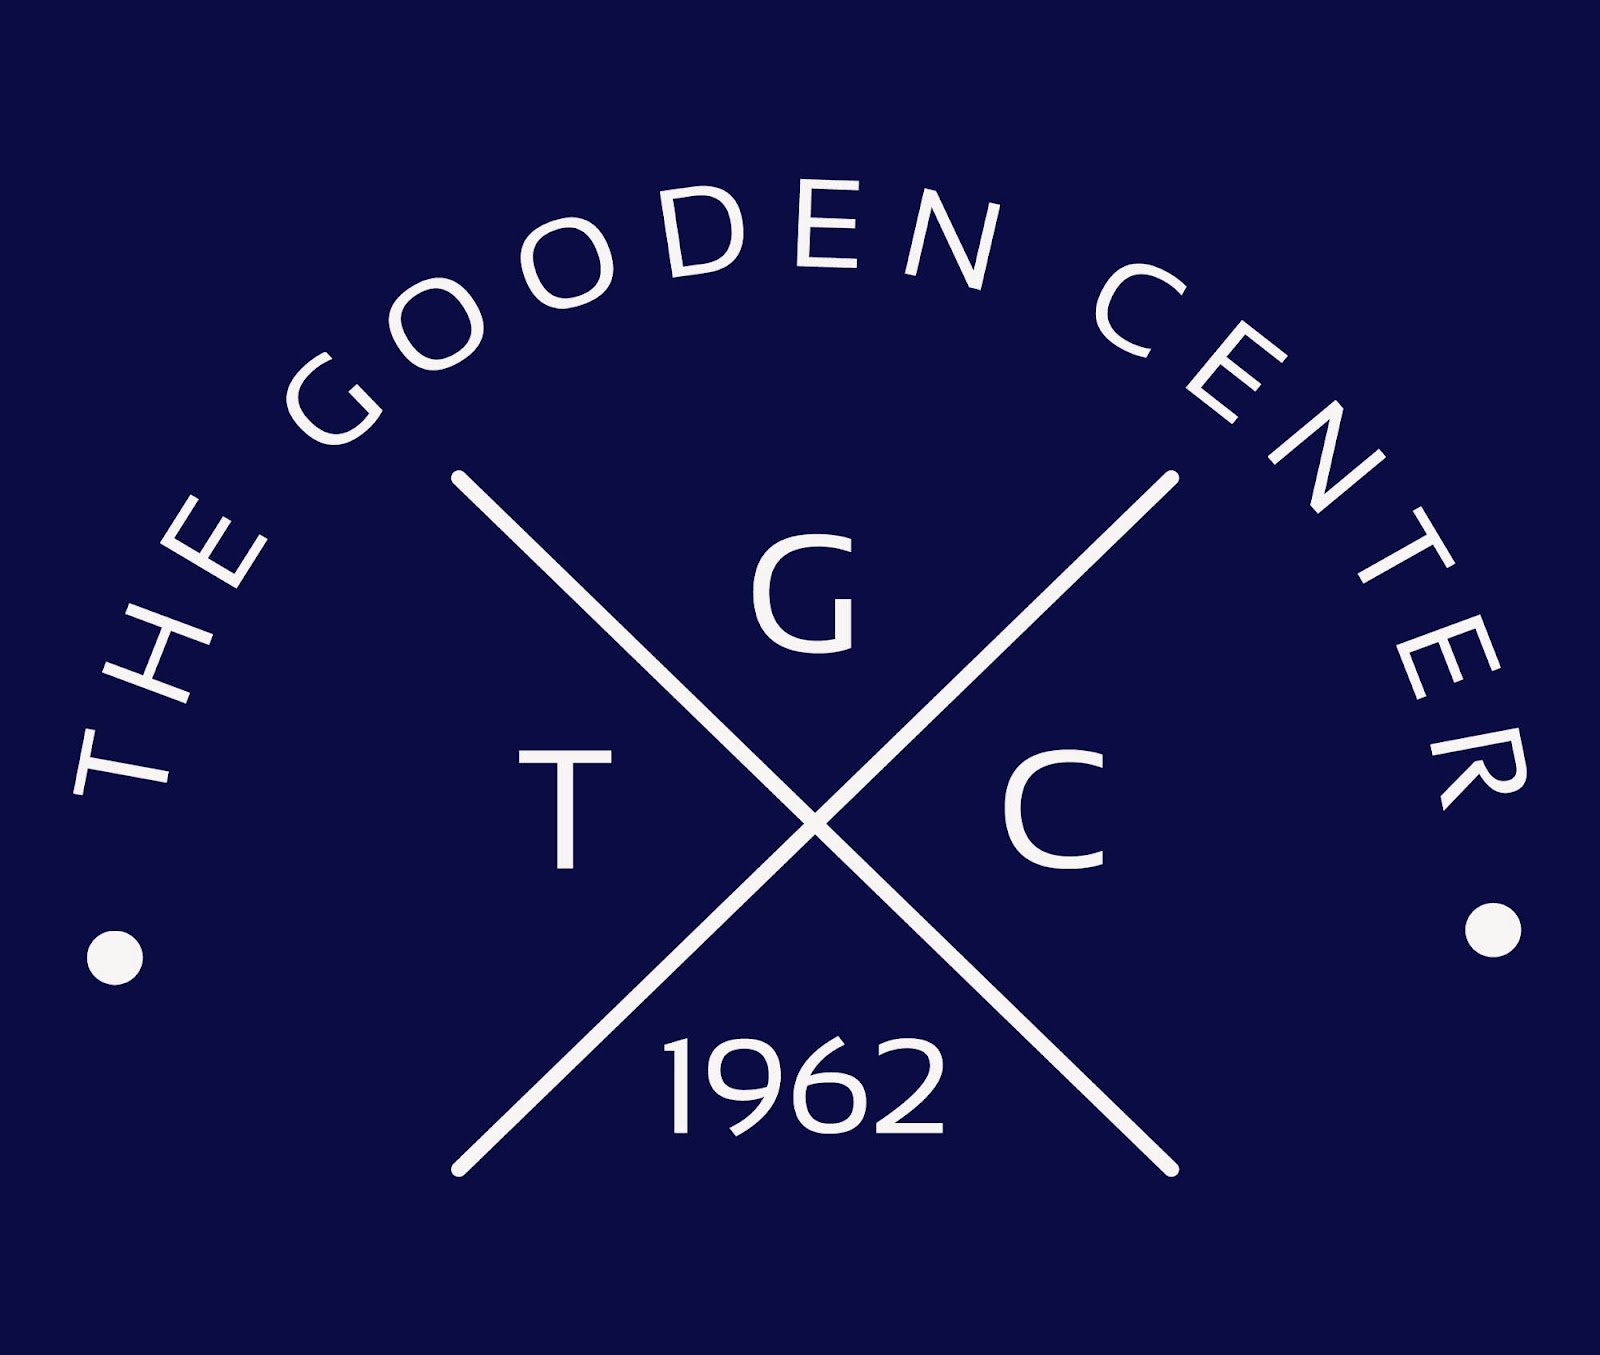 The Gooden Center